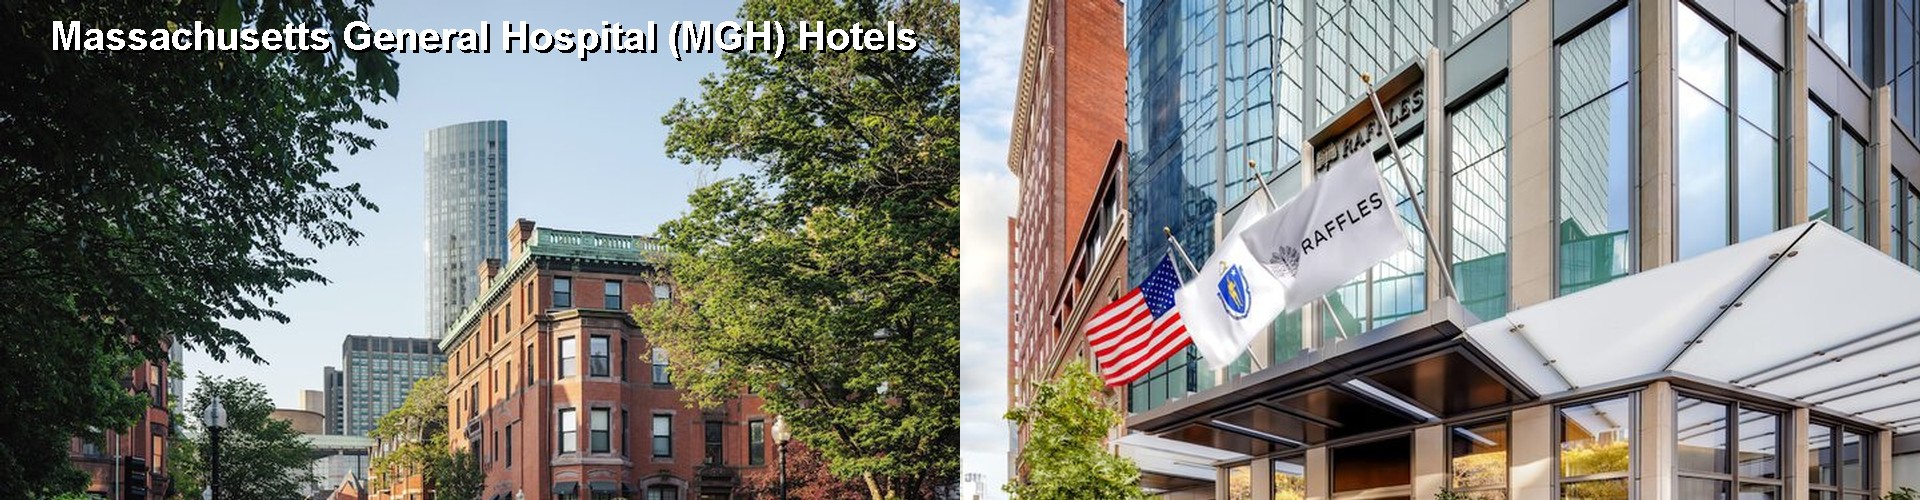 5 Best Hotels near Massachusetts General Hospital (MGH)